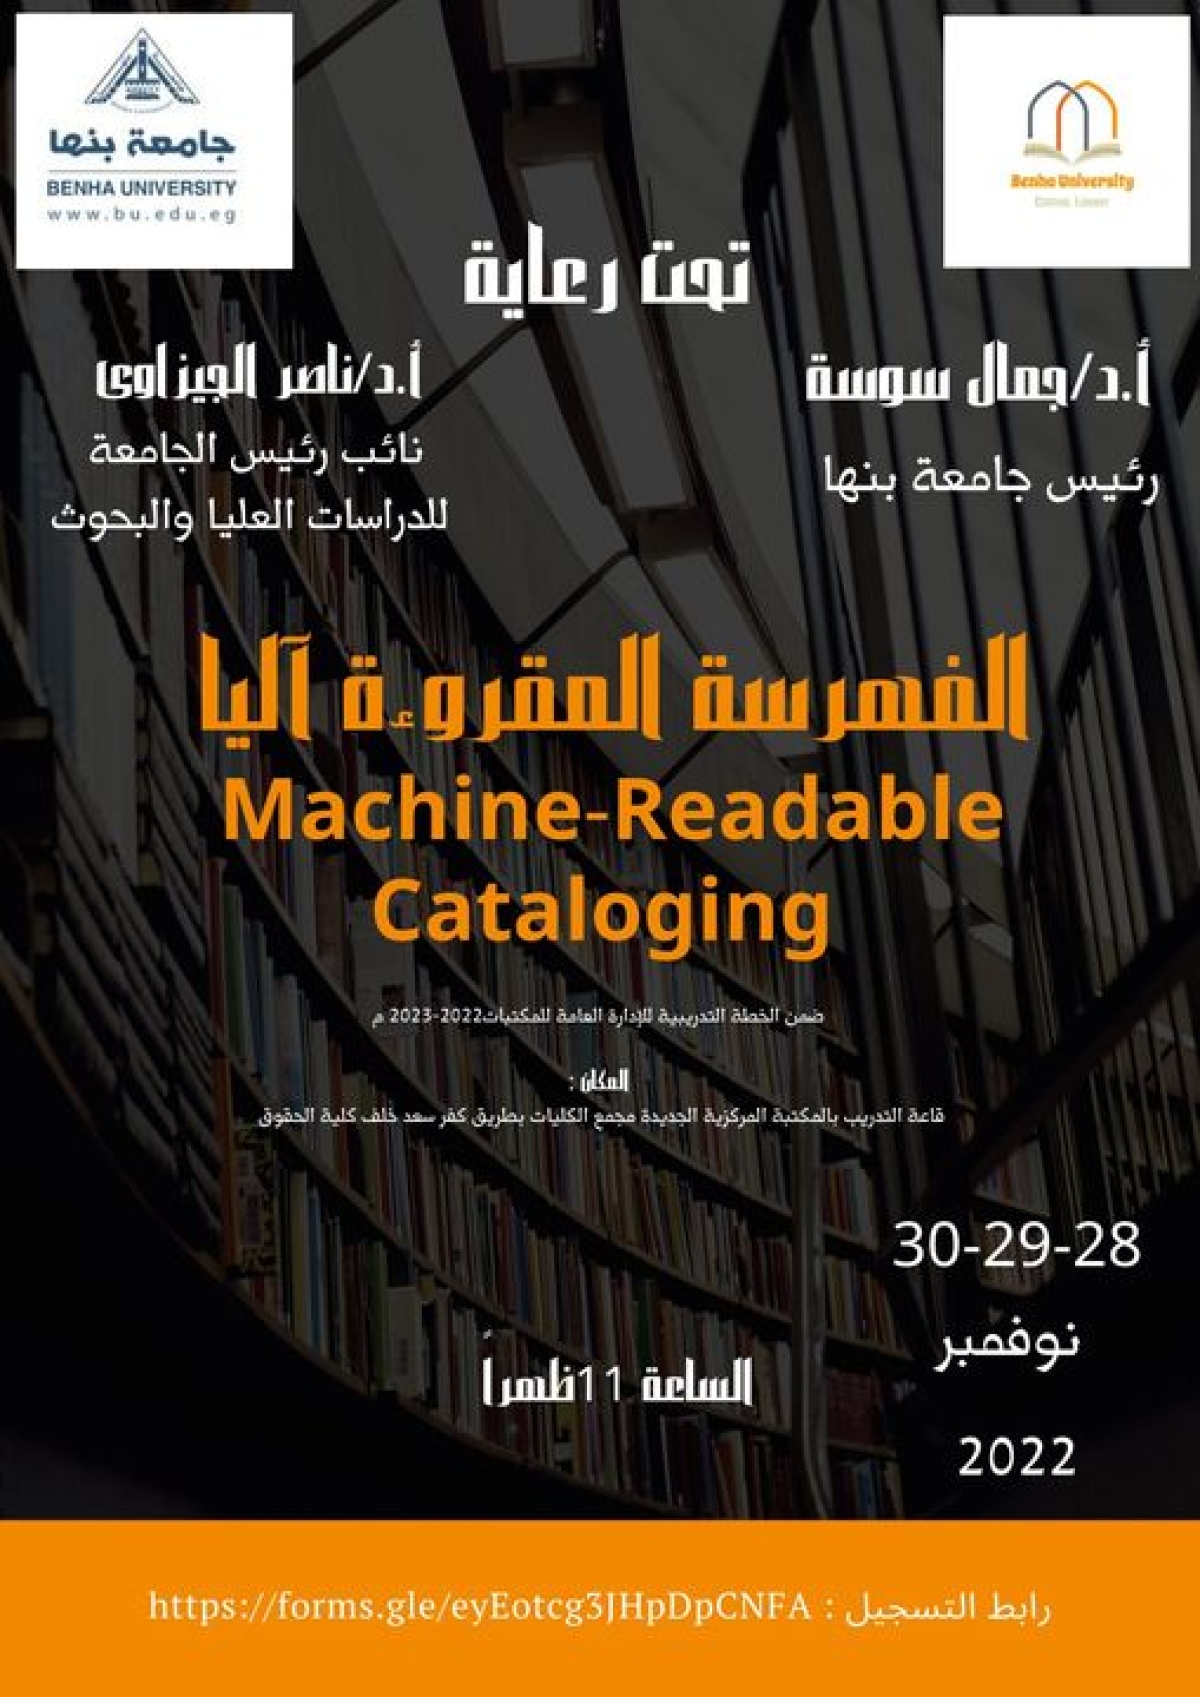 تنظم الإدارة العامة للمكتبات ورشة عمل بعنوان الفهرسة المقروءة آليا  Machine-Readable Cataloging